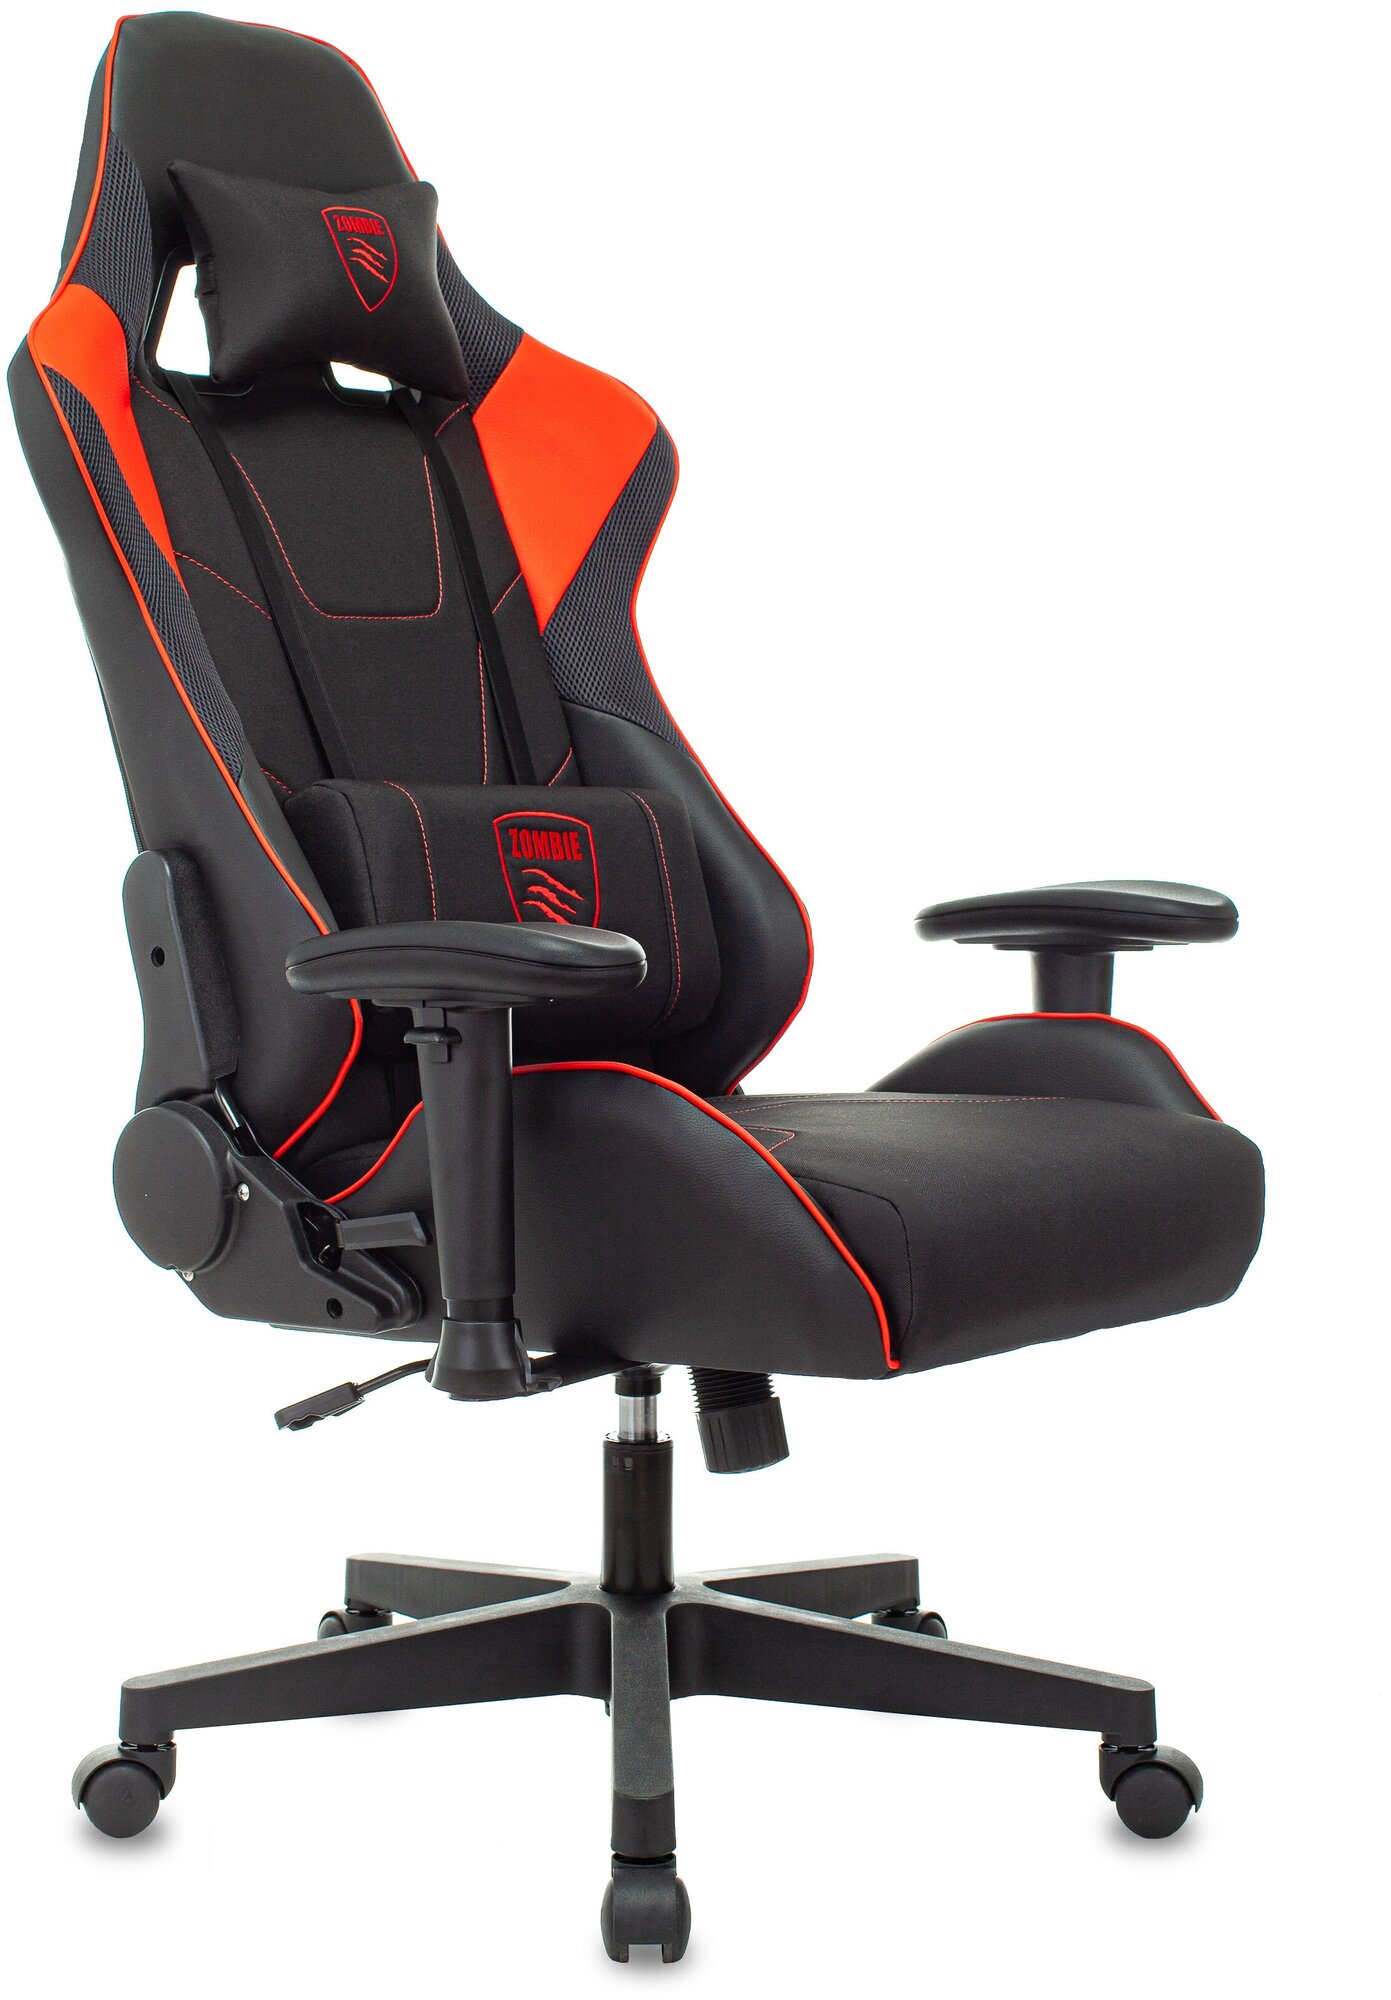 Компьютерное кресло Zombie Thunder 1 игровое, обивка: искусственная кожа/текстиль, цвет: черный/красный